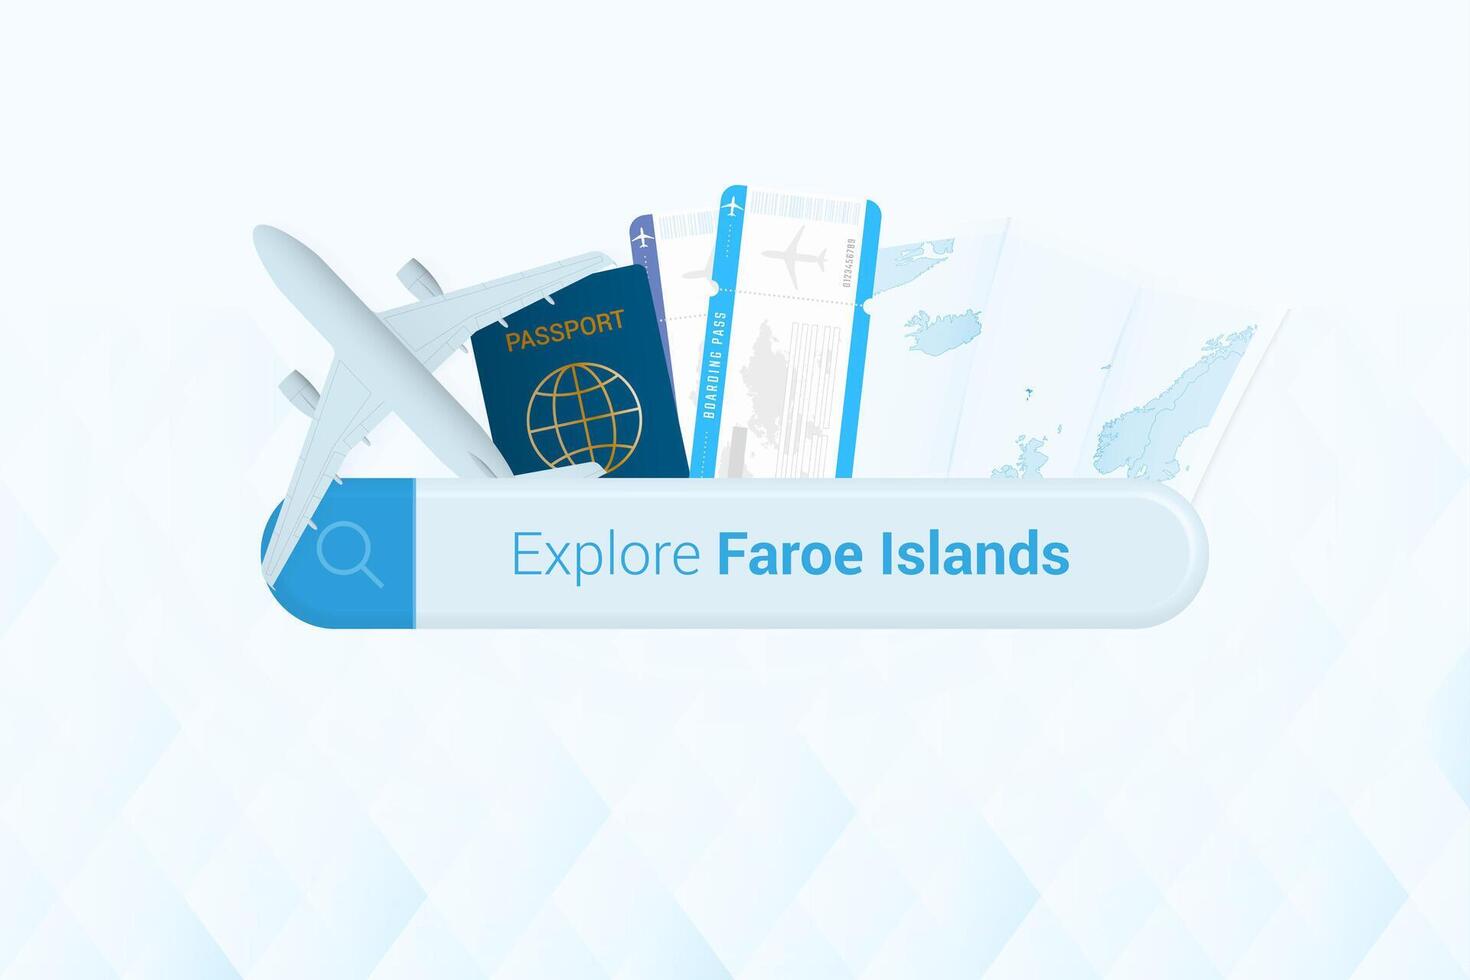 buscando Entradas a Feroe islas o viaje destino en Feroe islas buscando bar con avión, pasaporte, embarque aprobar, Entradas y mapa. vector